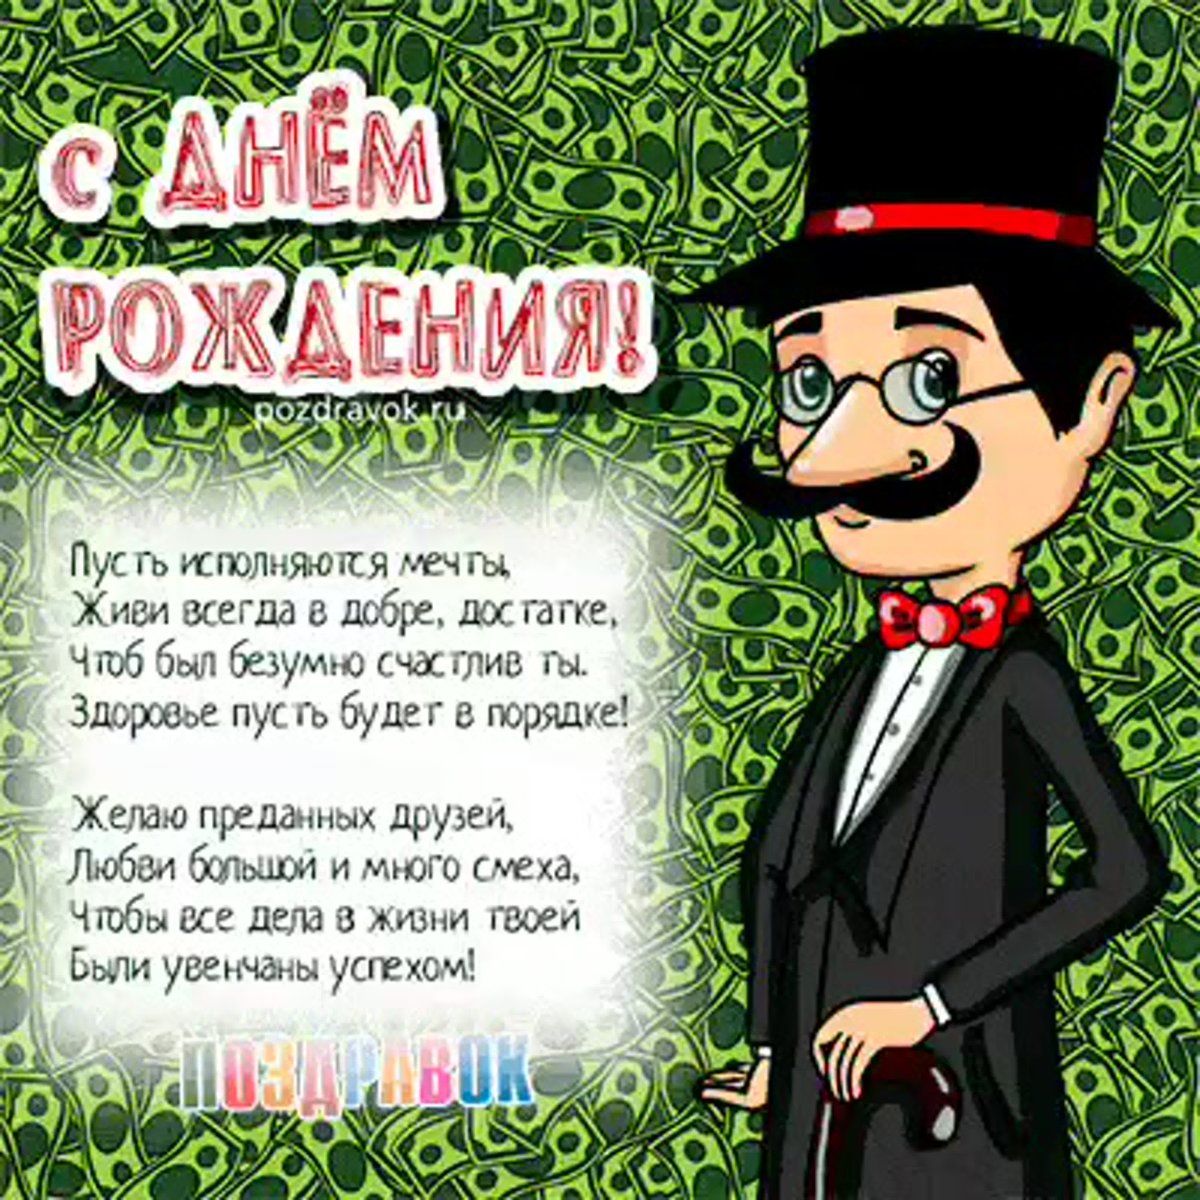 Армянское поздравление с днем рождения мужчине